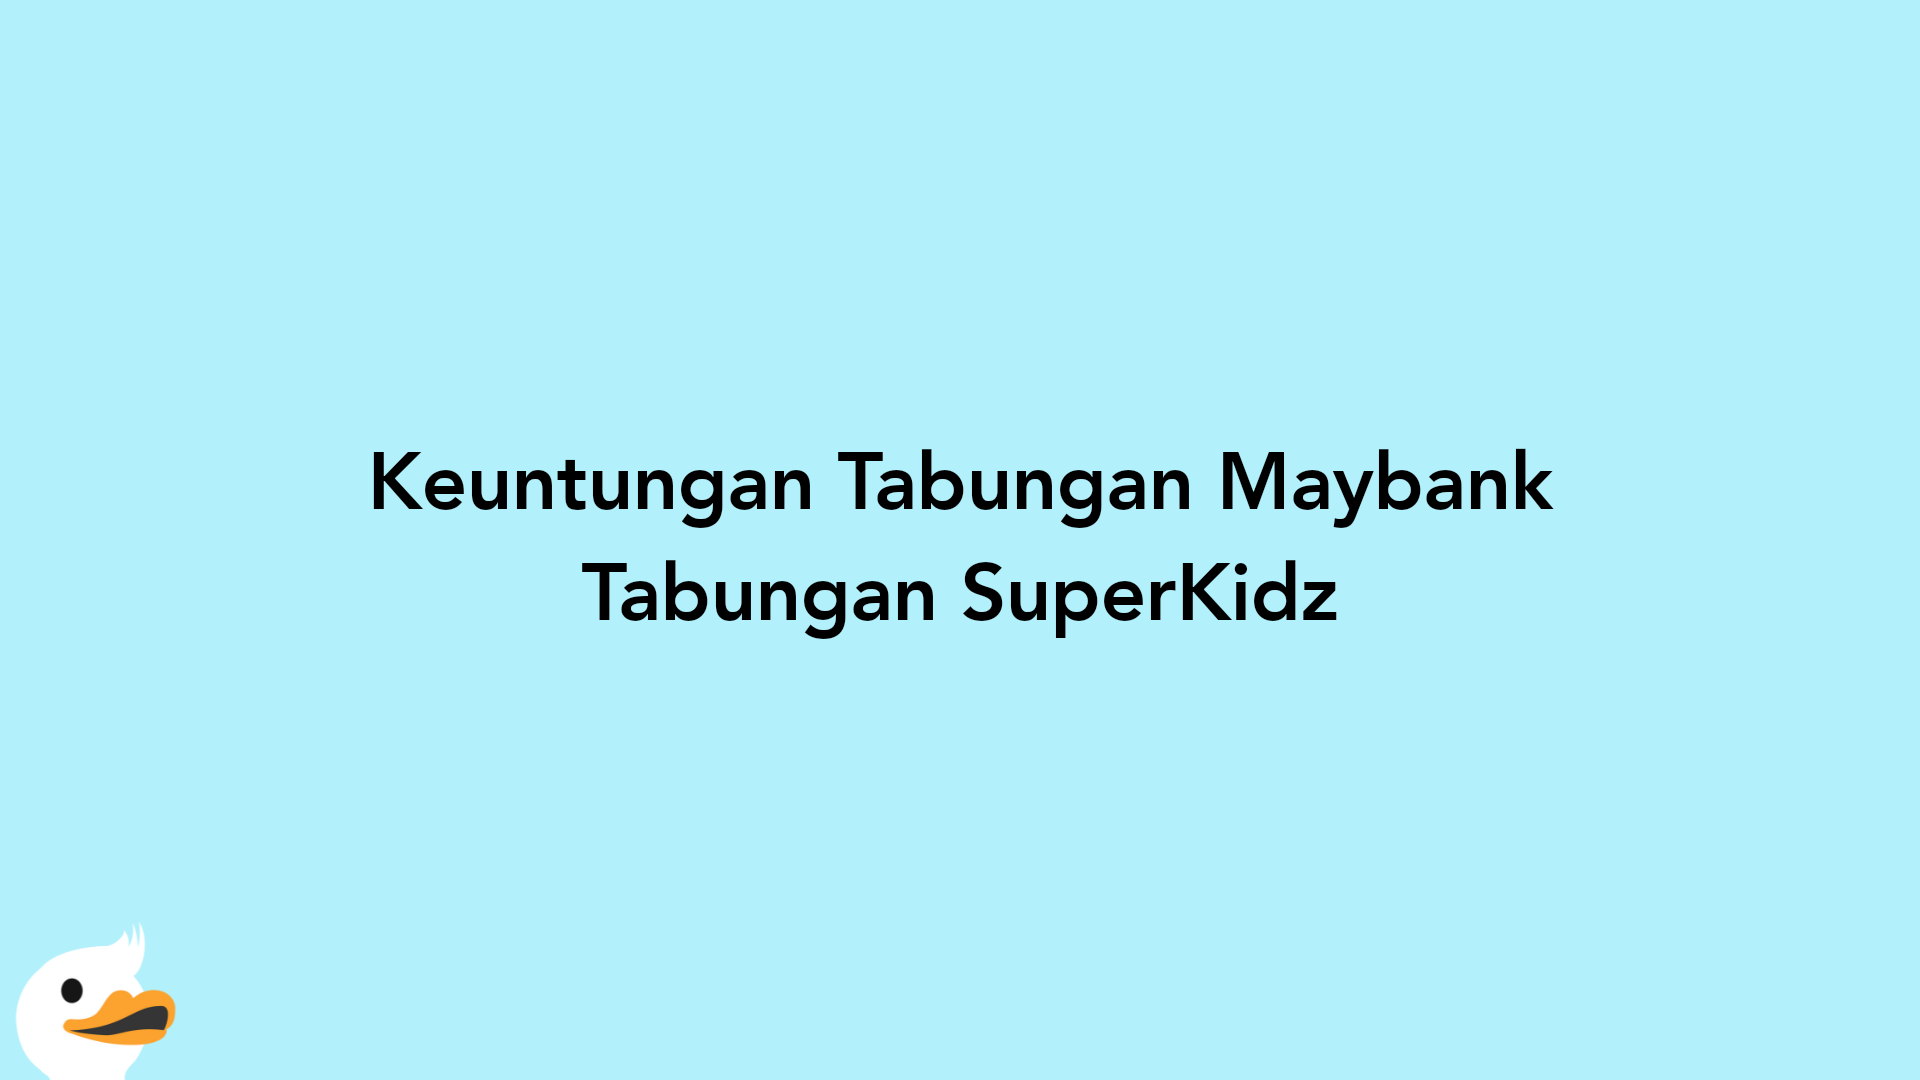 Keuntungan Tabungan Maybank Tabungan SuperKidz